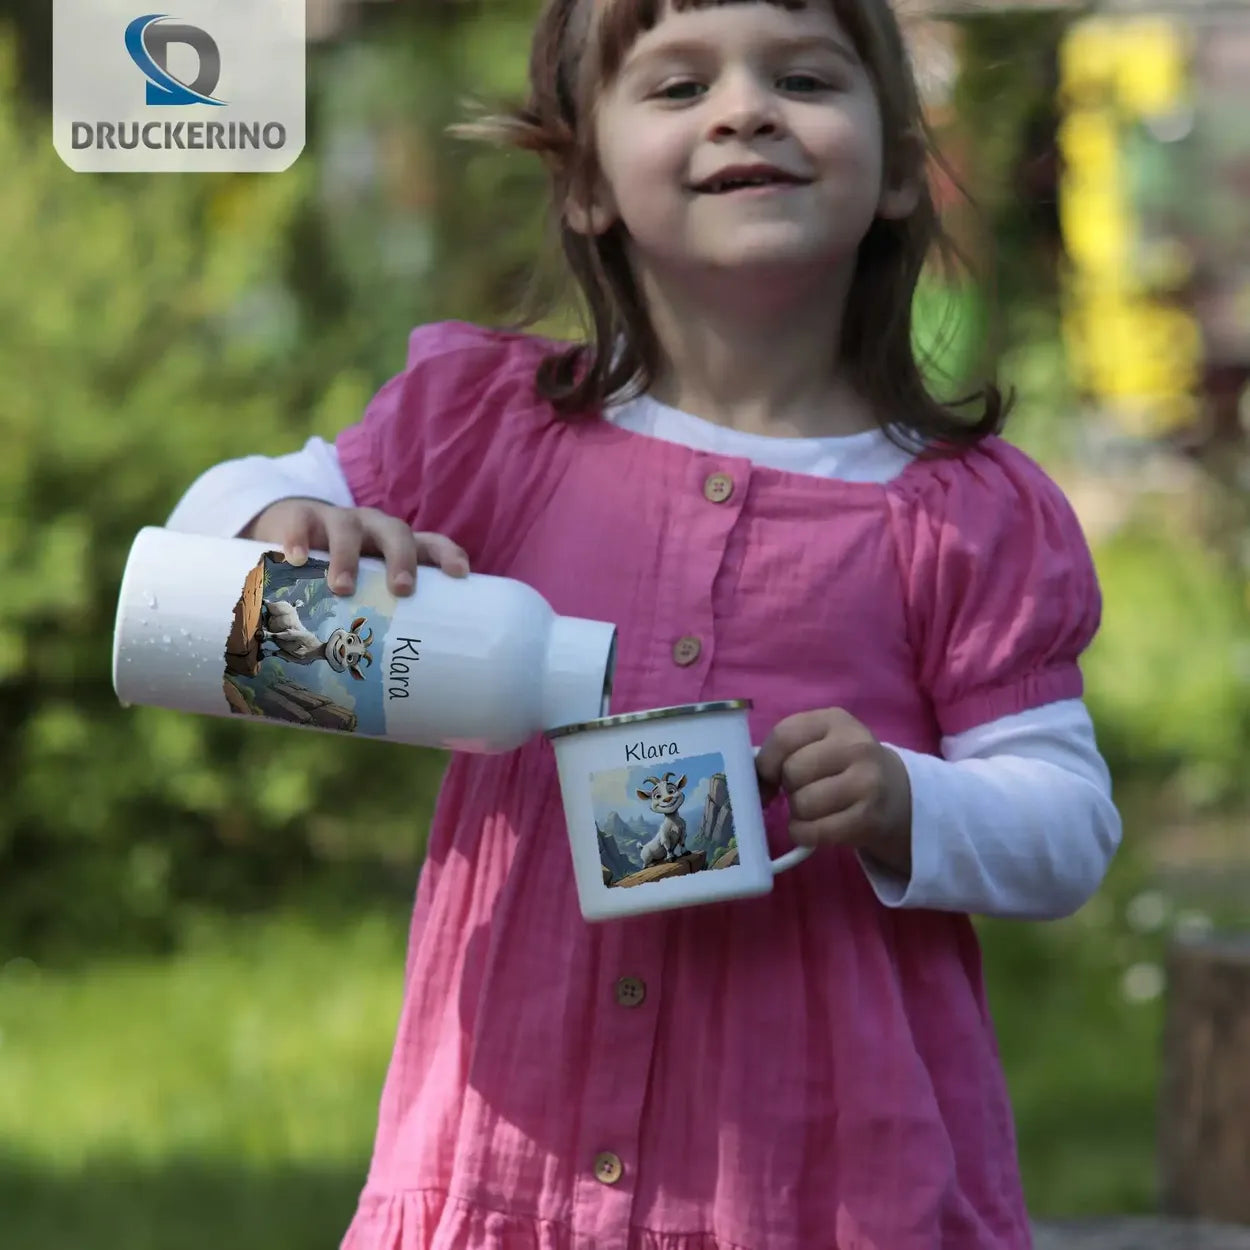 Abenteuer Ziege Emaille Tasse für Kinder personalisiert Emailletasse Druckerino   